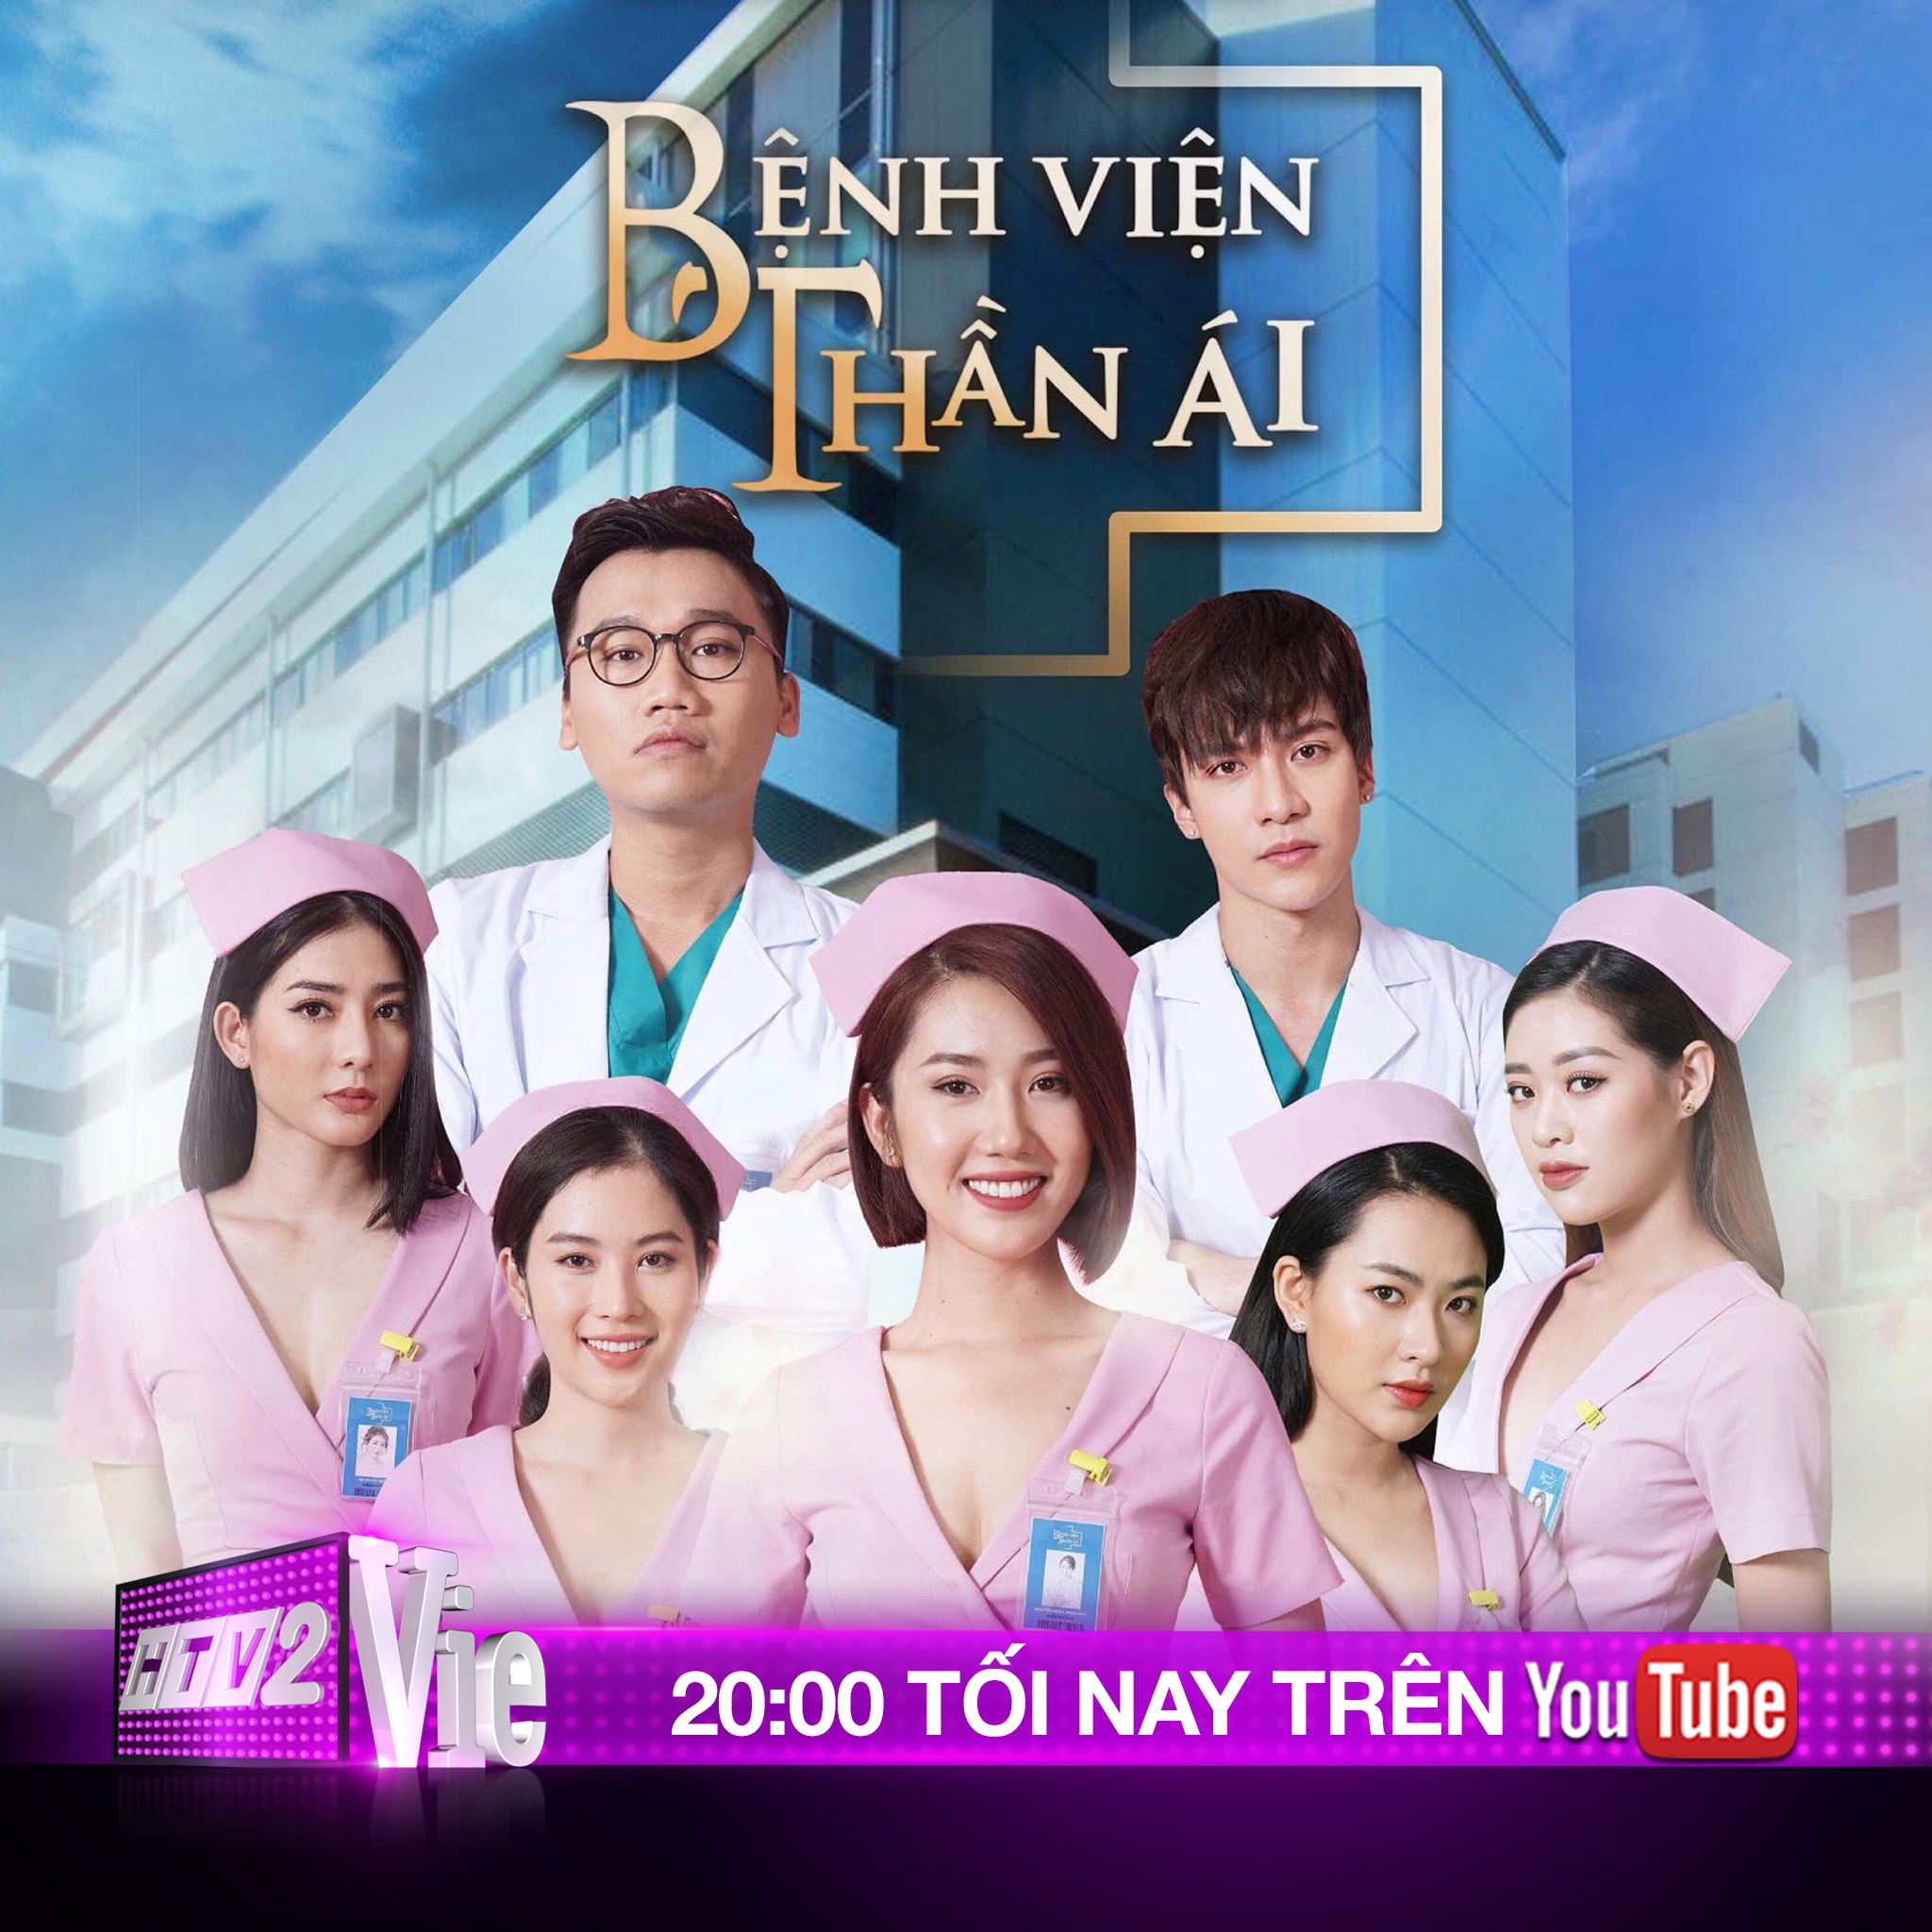 Bệnh Viện Thần Ái – Thúy Ngân, Xuân Nghị | Vie Channel – HTV2 – 20:00 – 11/07